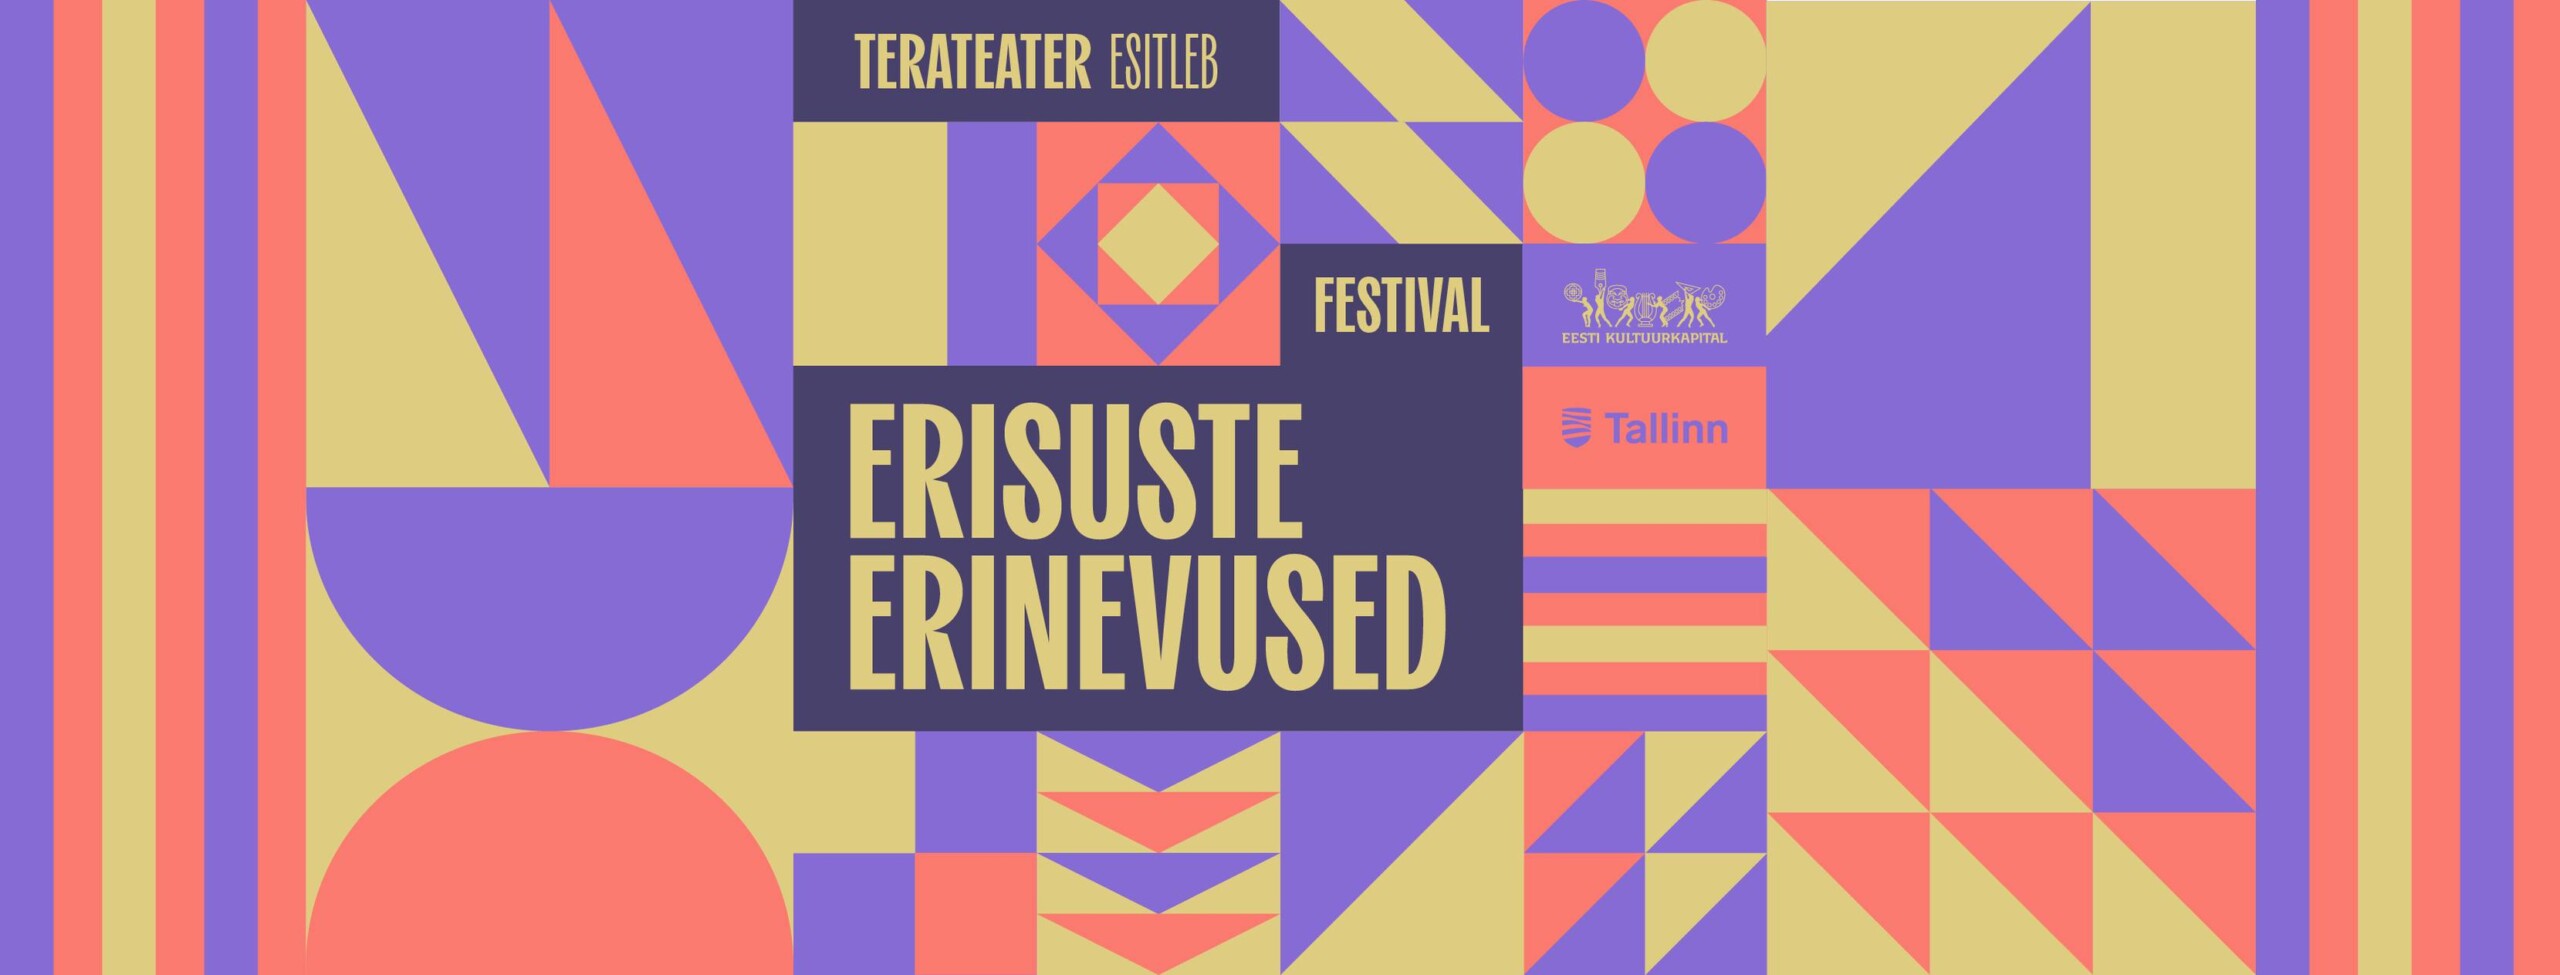 Pildi taust koosneb lillakatest, beežikatest ja roosakatest geomeetrilistest kujunditest, pildil on kirjas "Terateater esitleb / festival Erisuste erinevused". Teksti kõrval on Kultuurkapitali ja Tallinna linna logo.